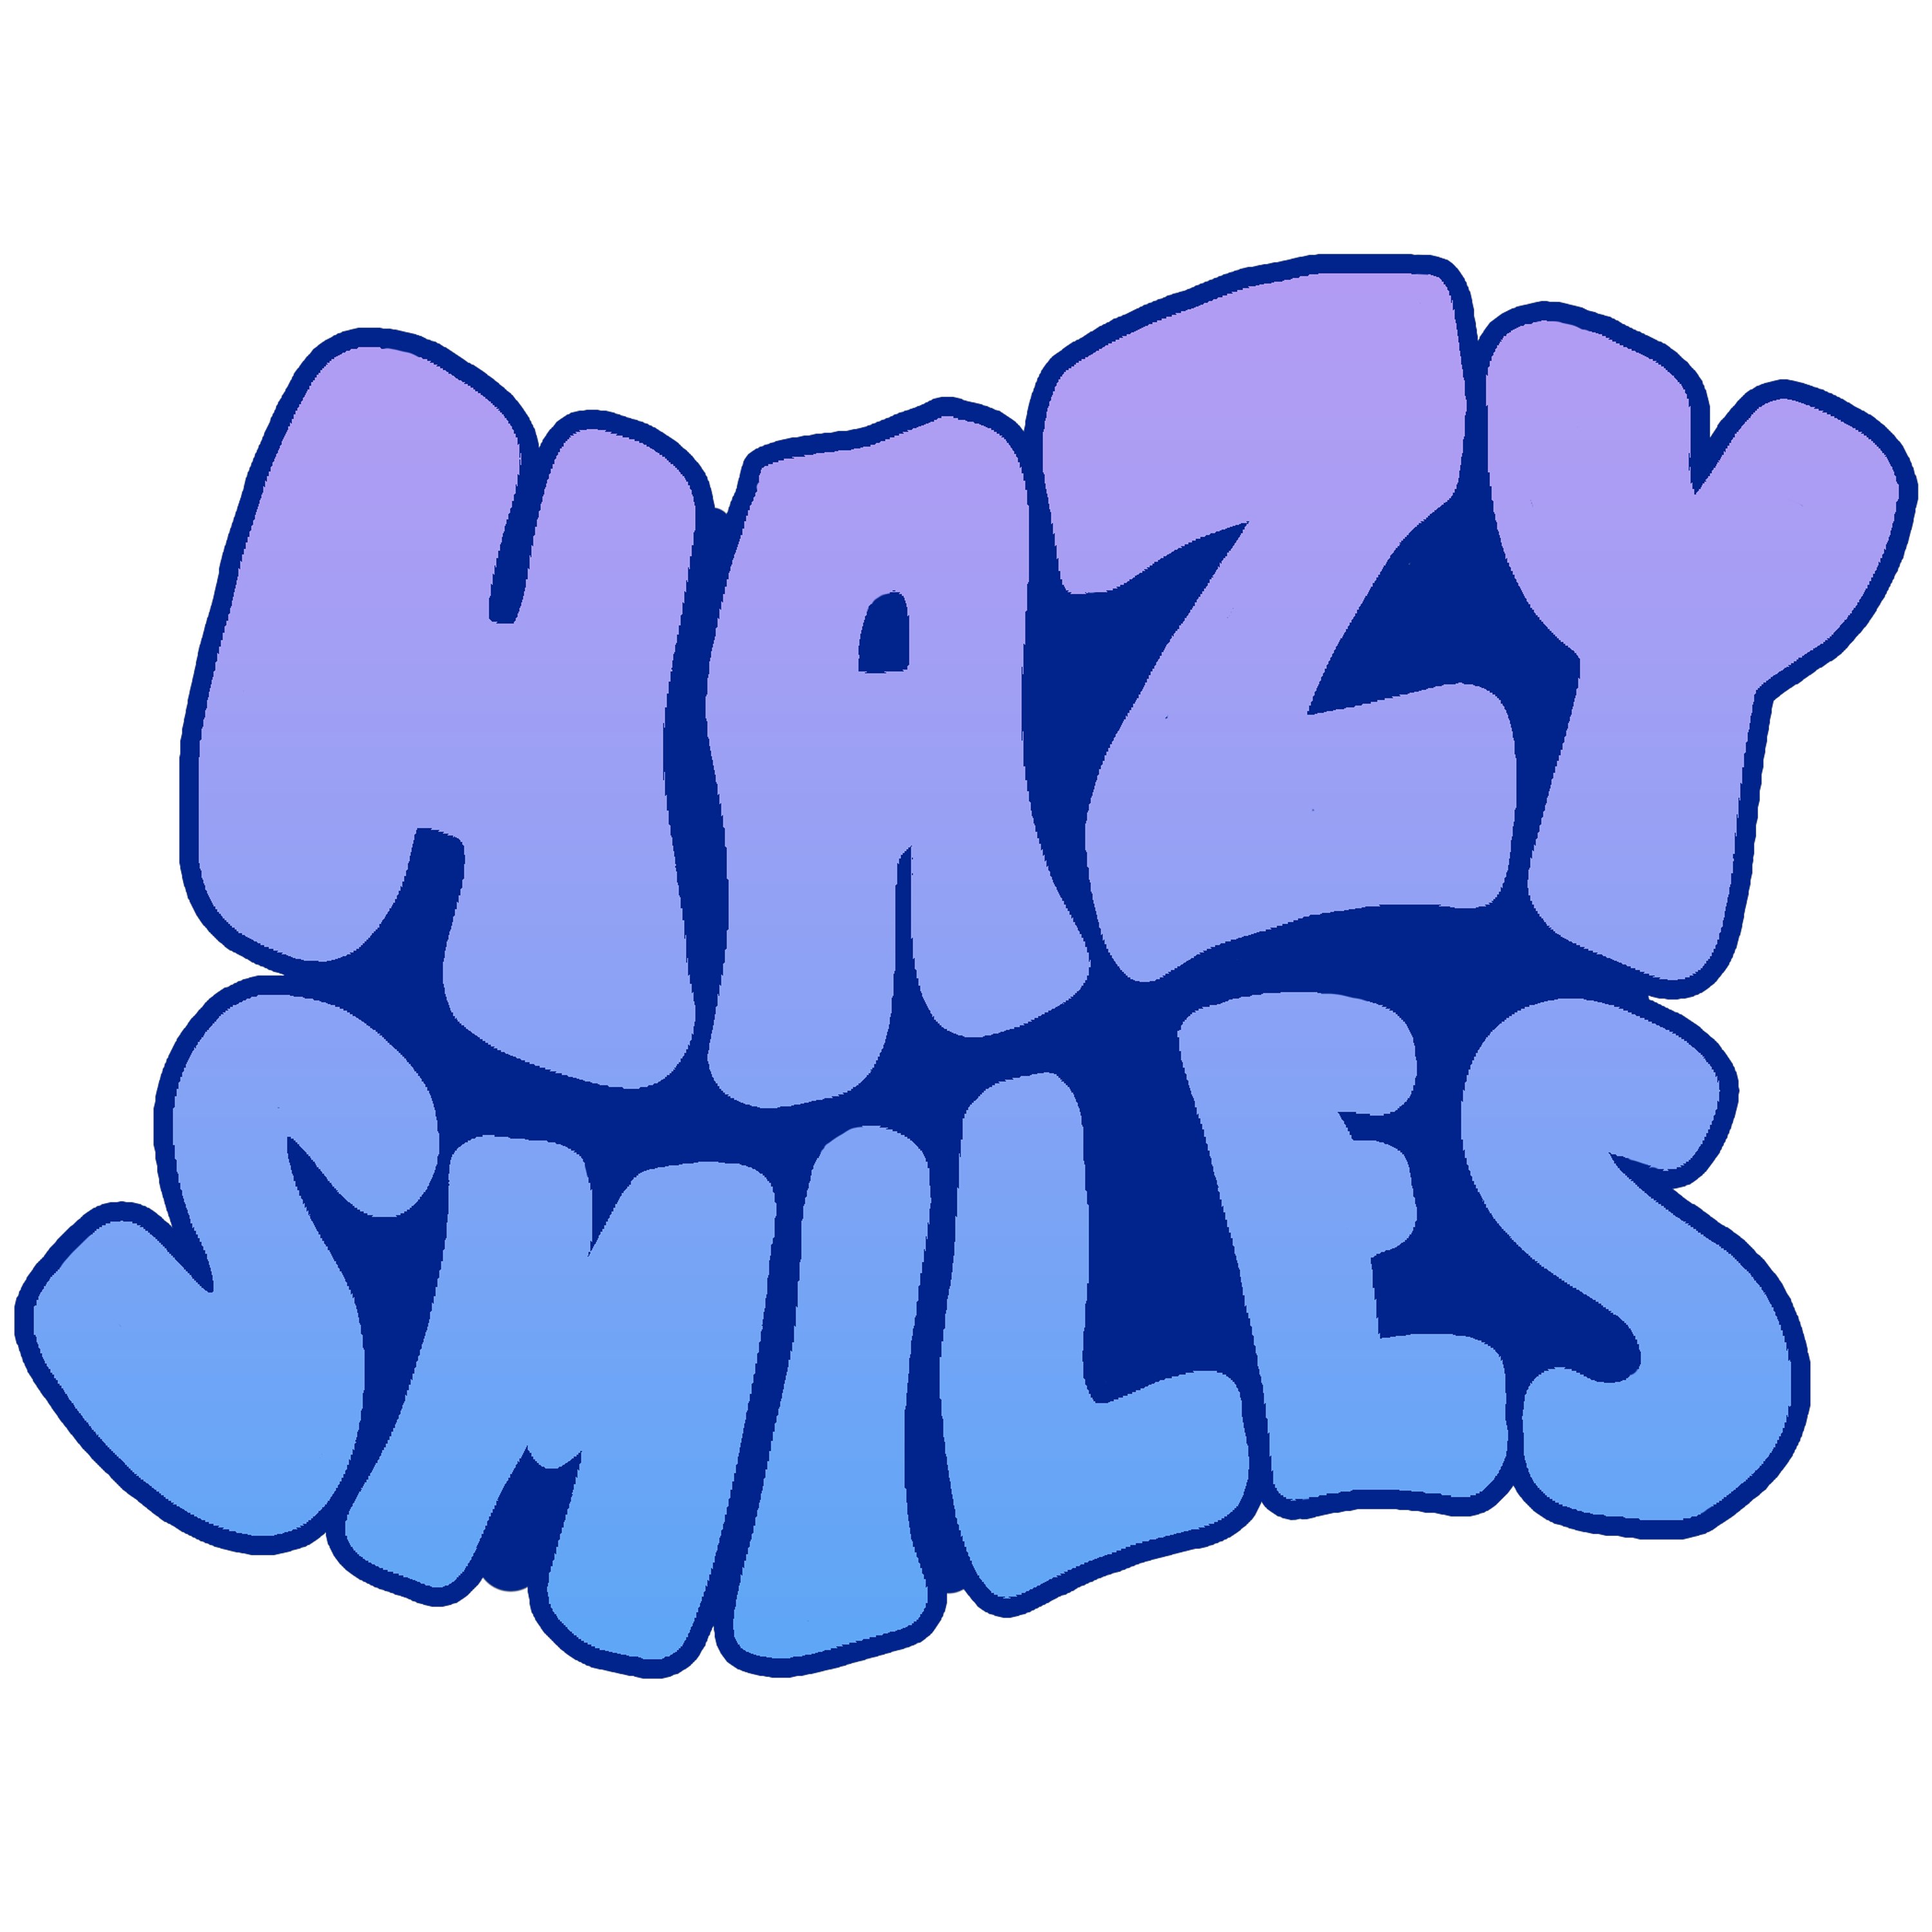 Hazy Smiles